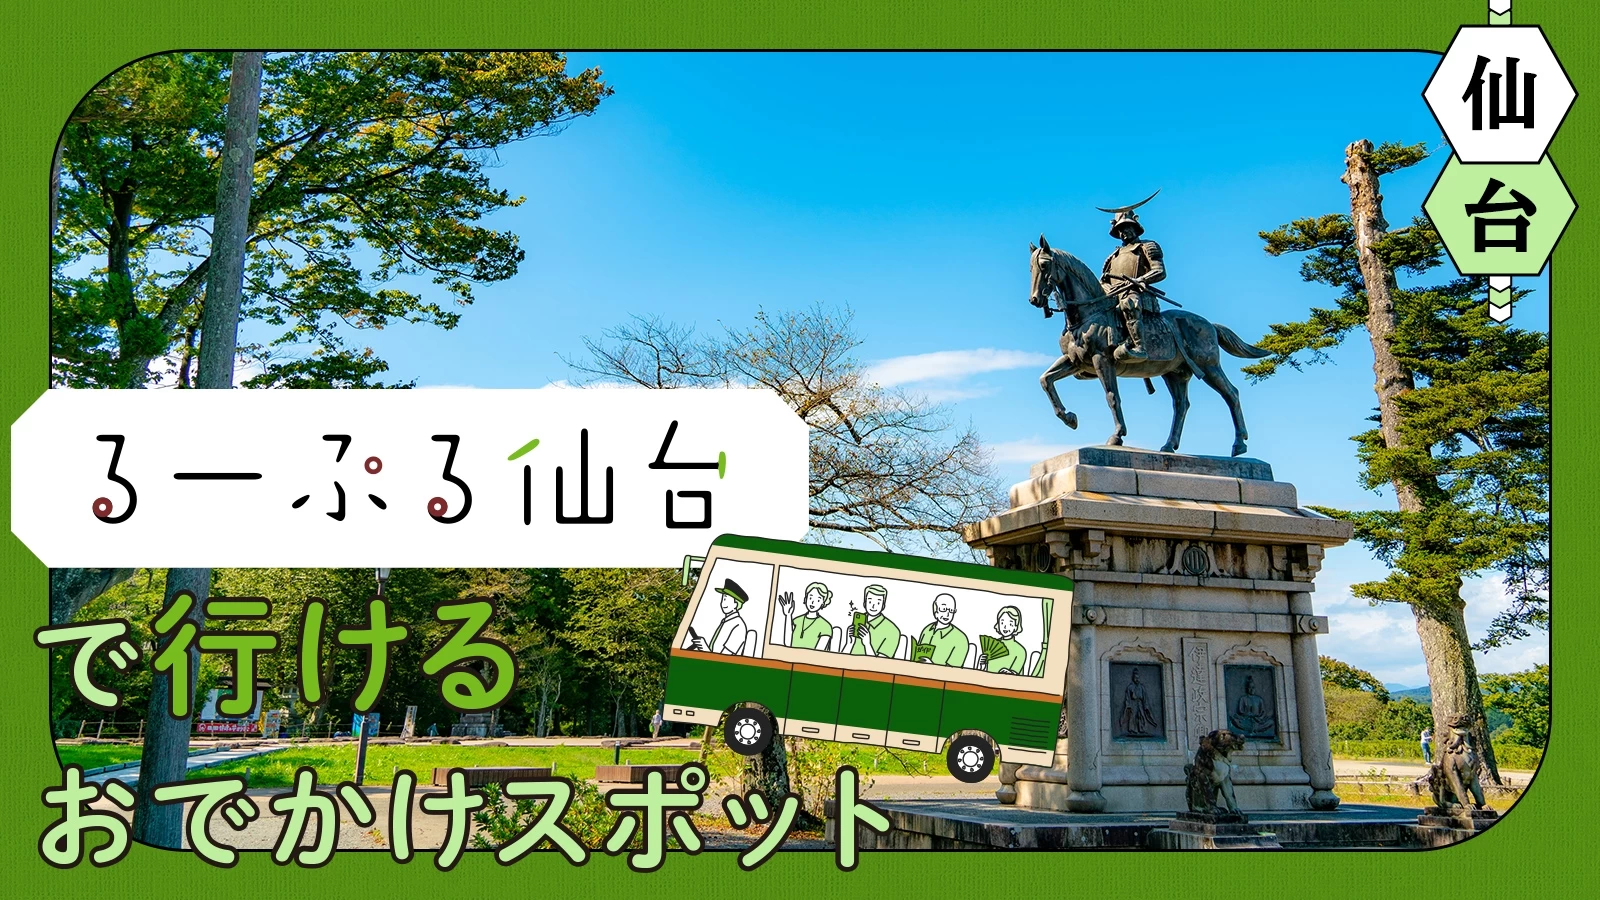 【仙台・バス旅】るーぷる仙台で行けるおでかけスポット11選